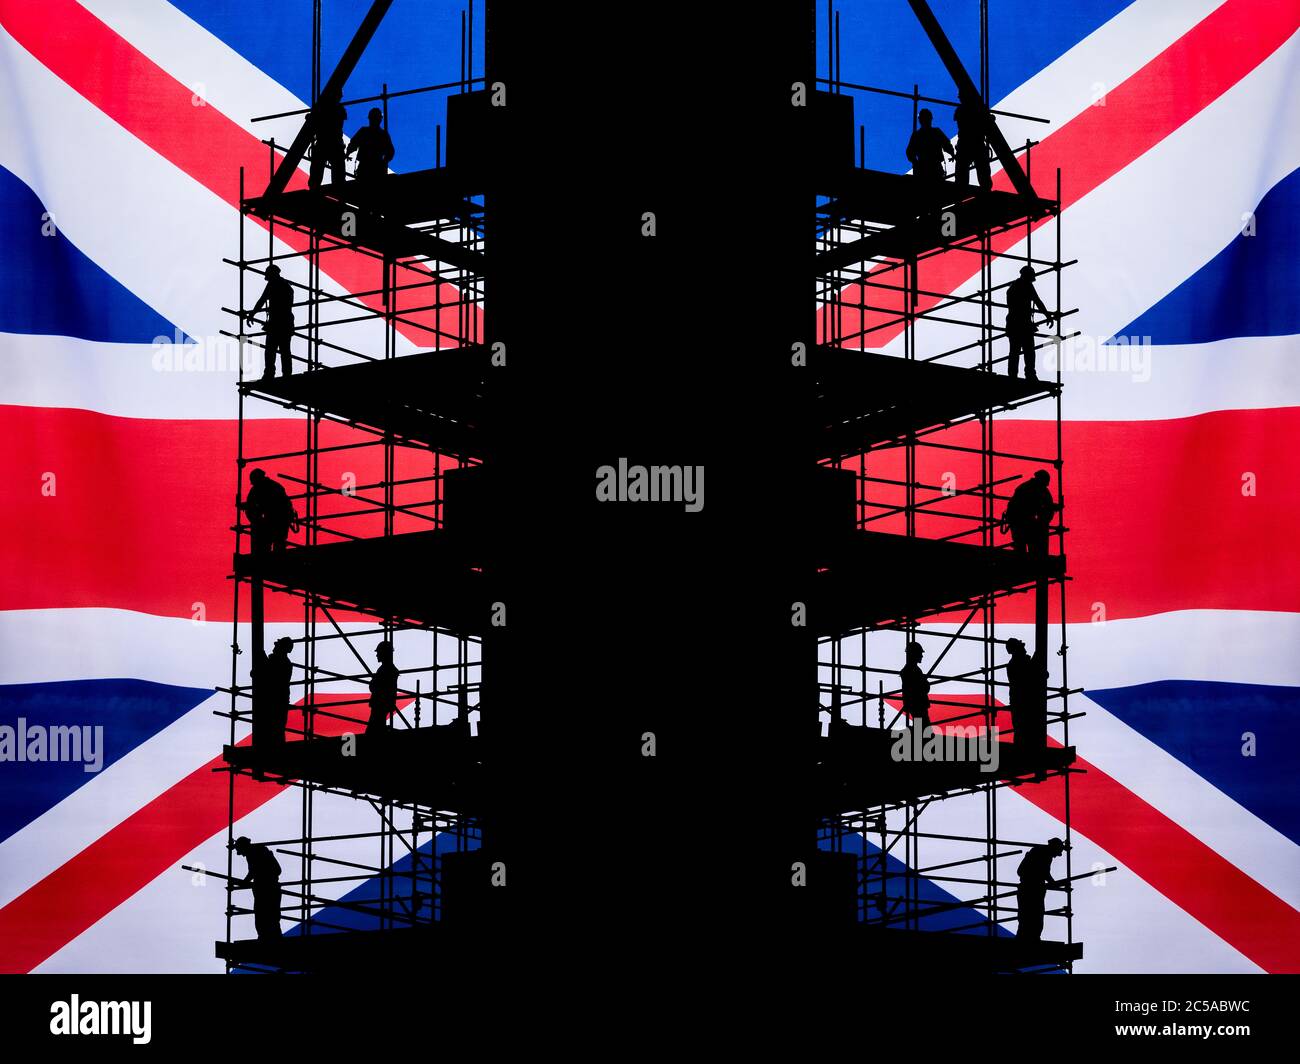 Wiederaufbau Großbritannien, Großbritannien, Coronavirus, Arbeitsplätze, Bauindustrie... Konzept. Gerüste und Arbeiter gegen die Flagge der britischen Union (Jack). Stockfoto